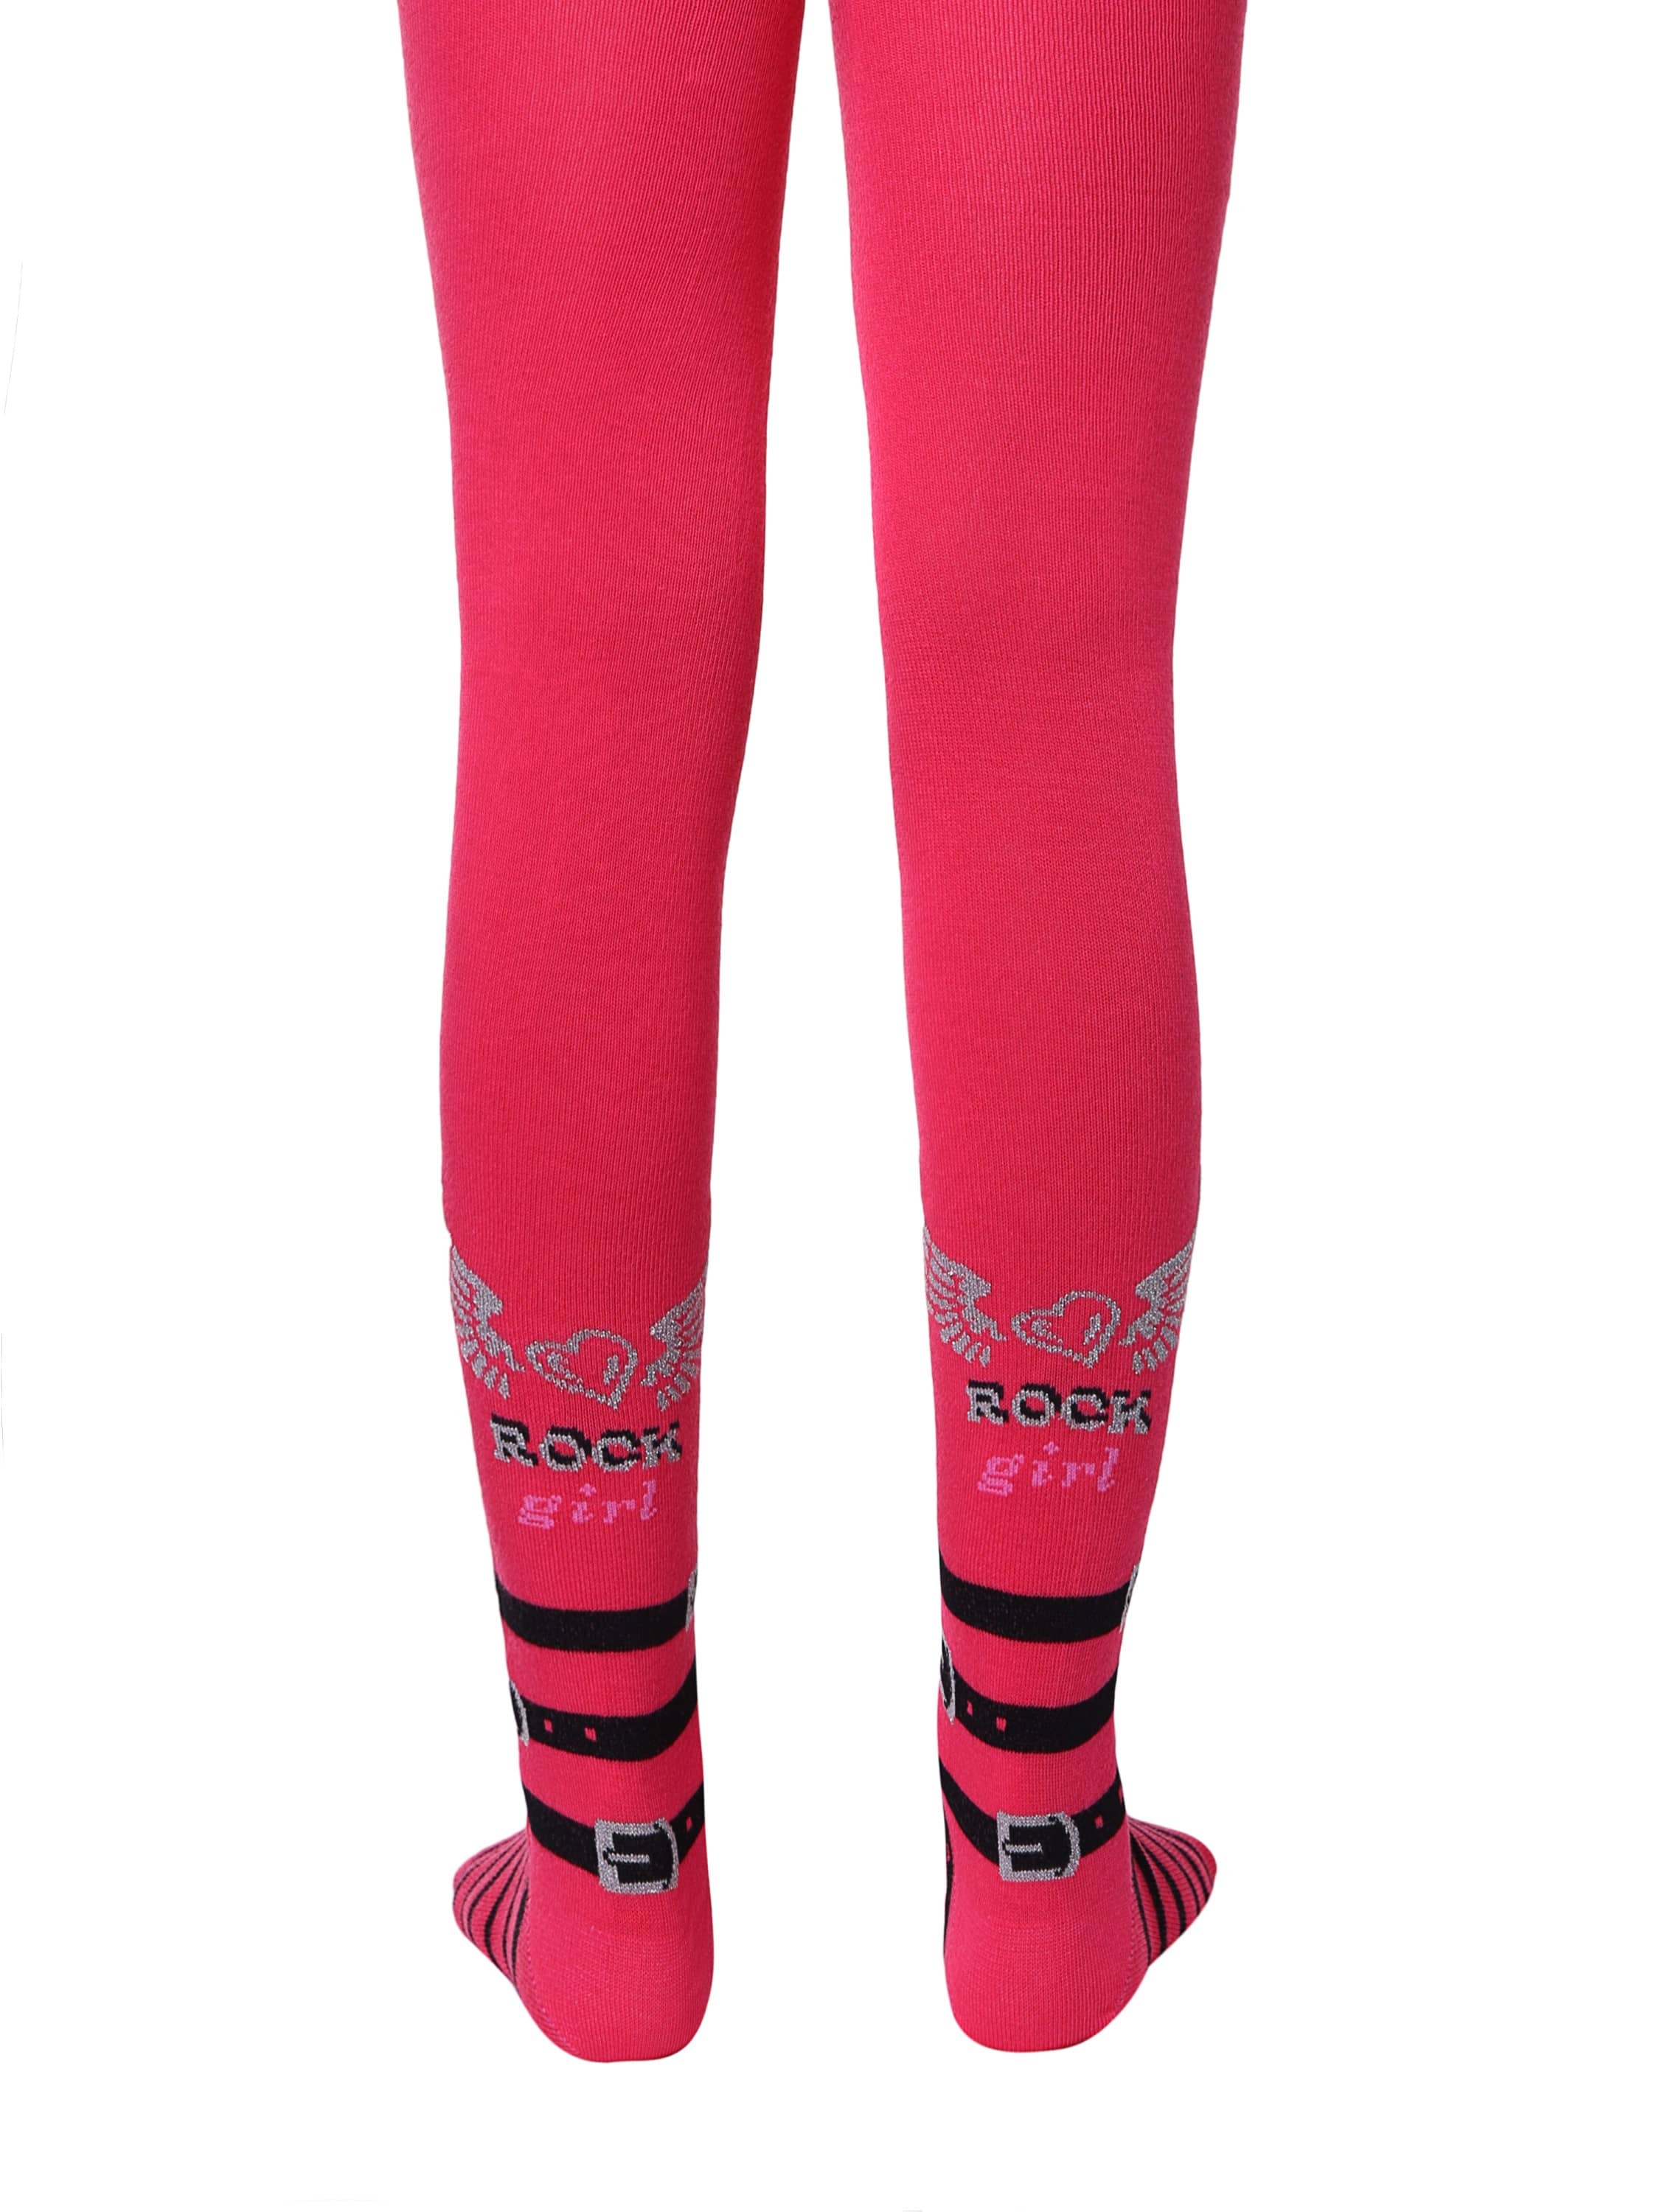 Otroške bombažne hlačne nogavice za deklice Conte Kids Rock Girl v rdeči barvi